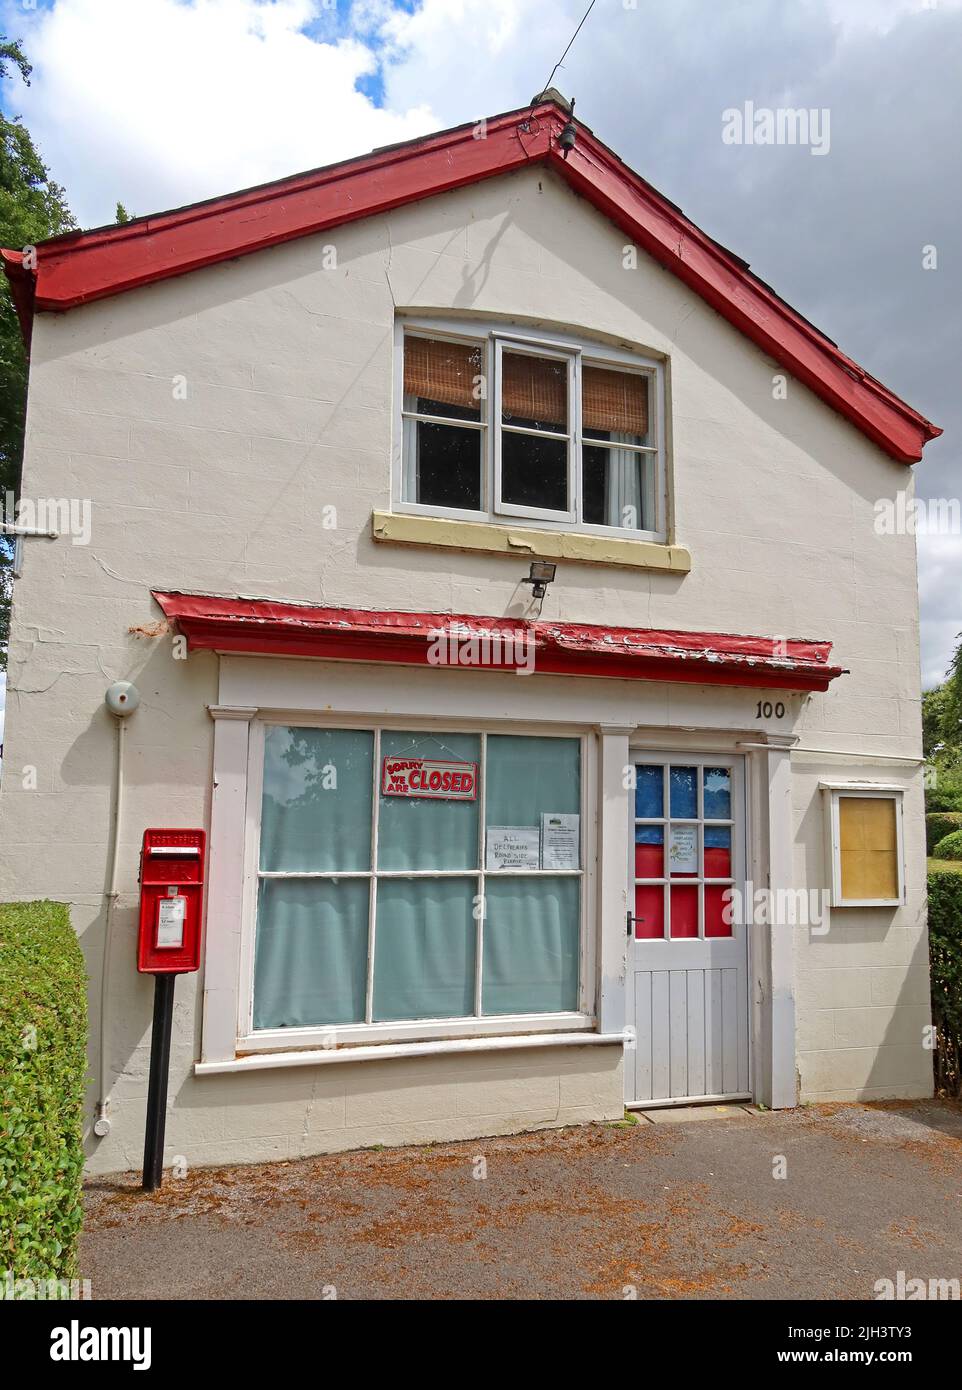 Il negozio Dunham Massey villaggio rurale, un ex-ufficio postale perso, ora chiuso, Woodhouse Ln, Bowden, Altrincham, Cheshire, Inghilterra, Regno Unito, WA14 5SB Foto Stock